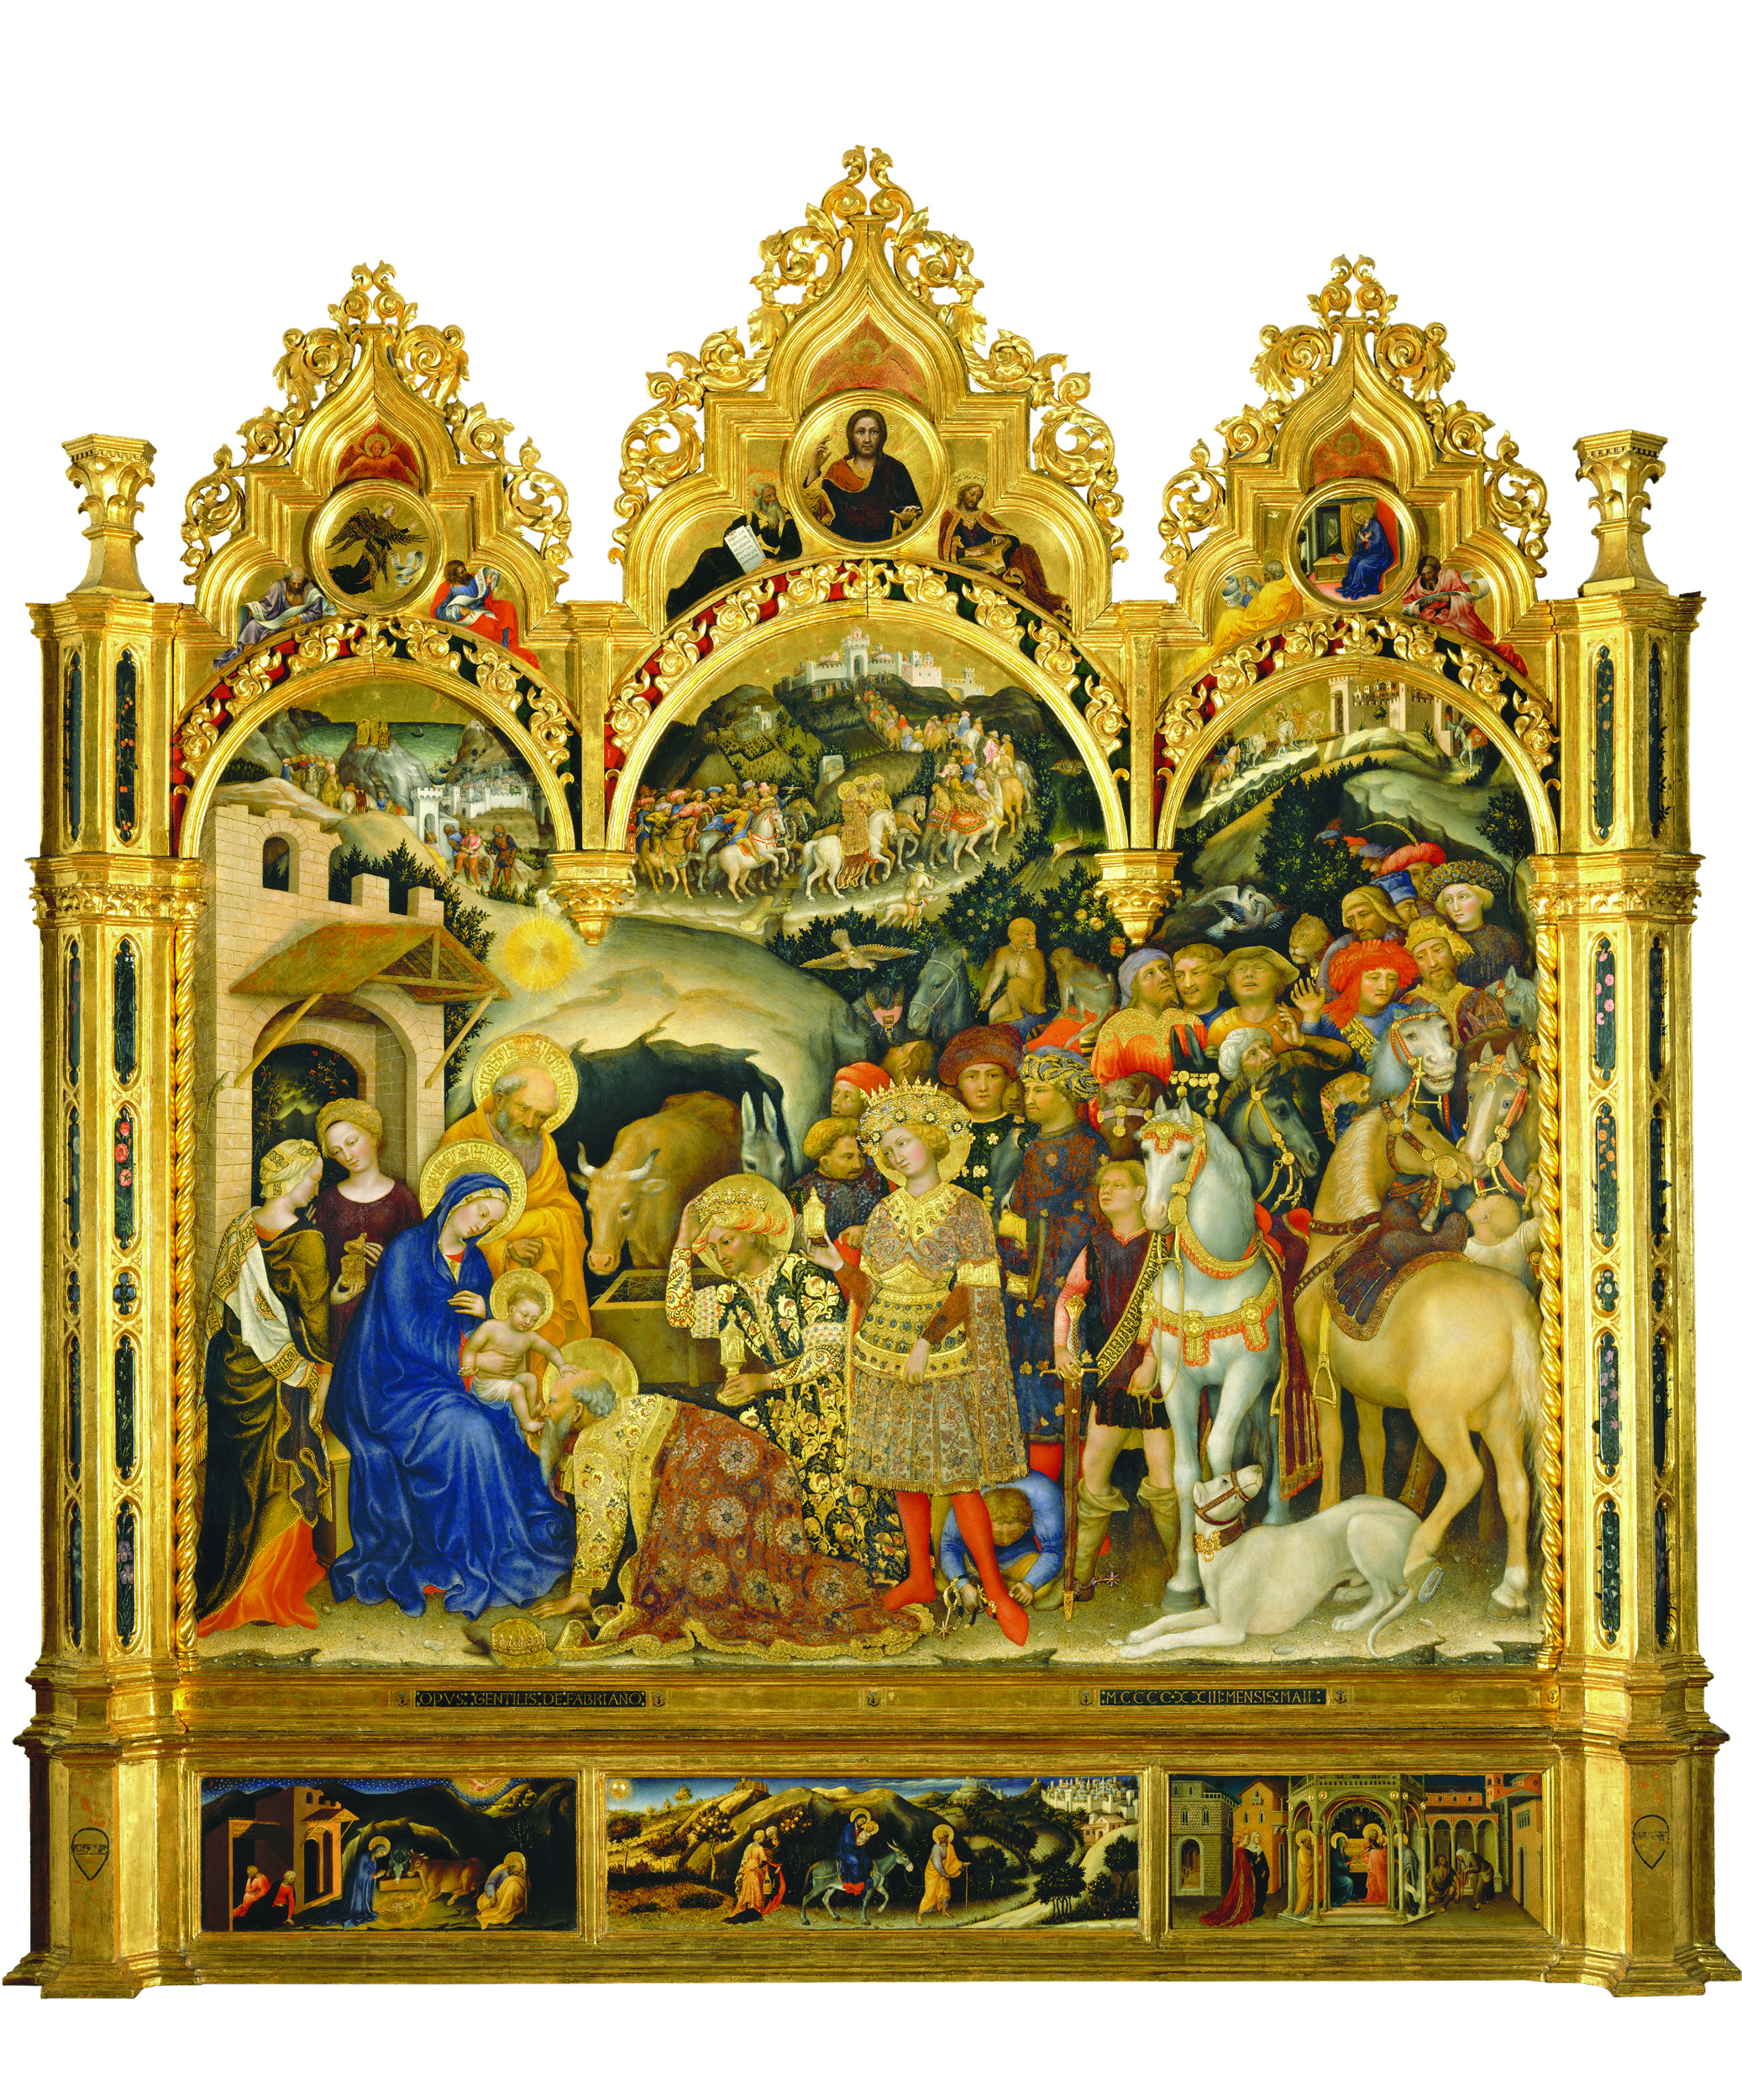 Gentile Da Fabriano’s Adoration of the Magi, c1423. Galleria Degli Uffizi, Florence